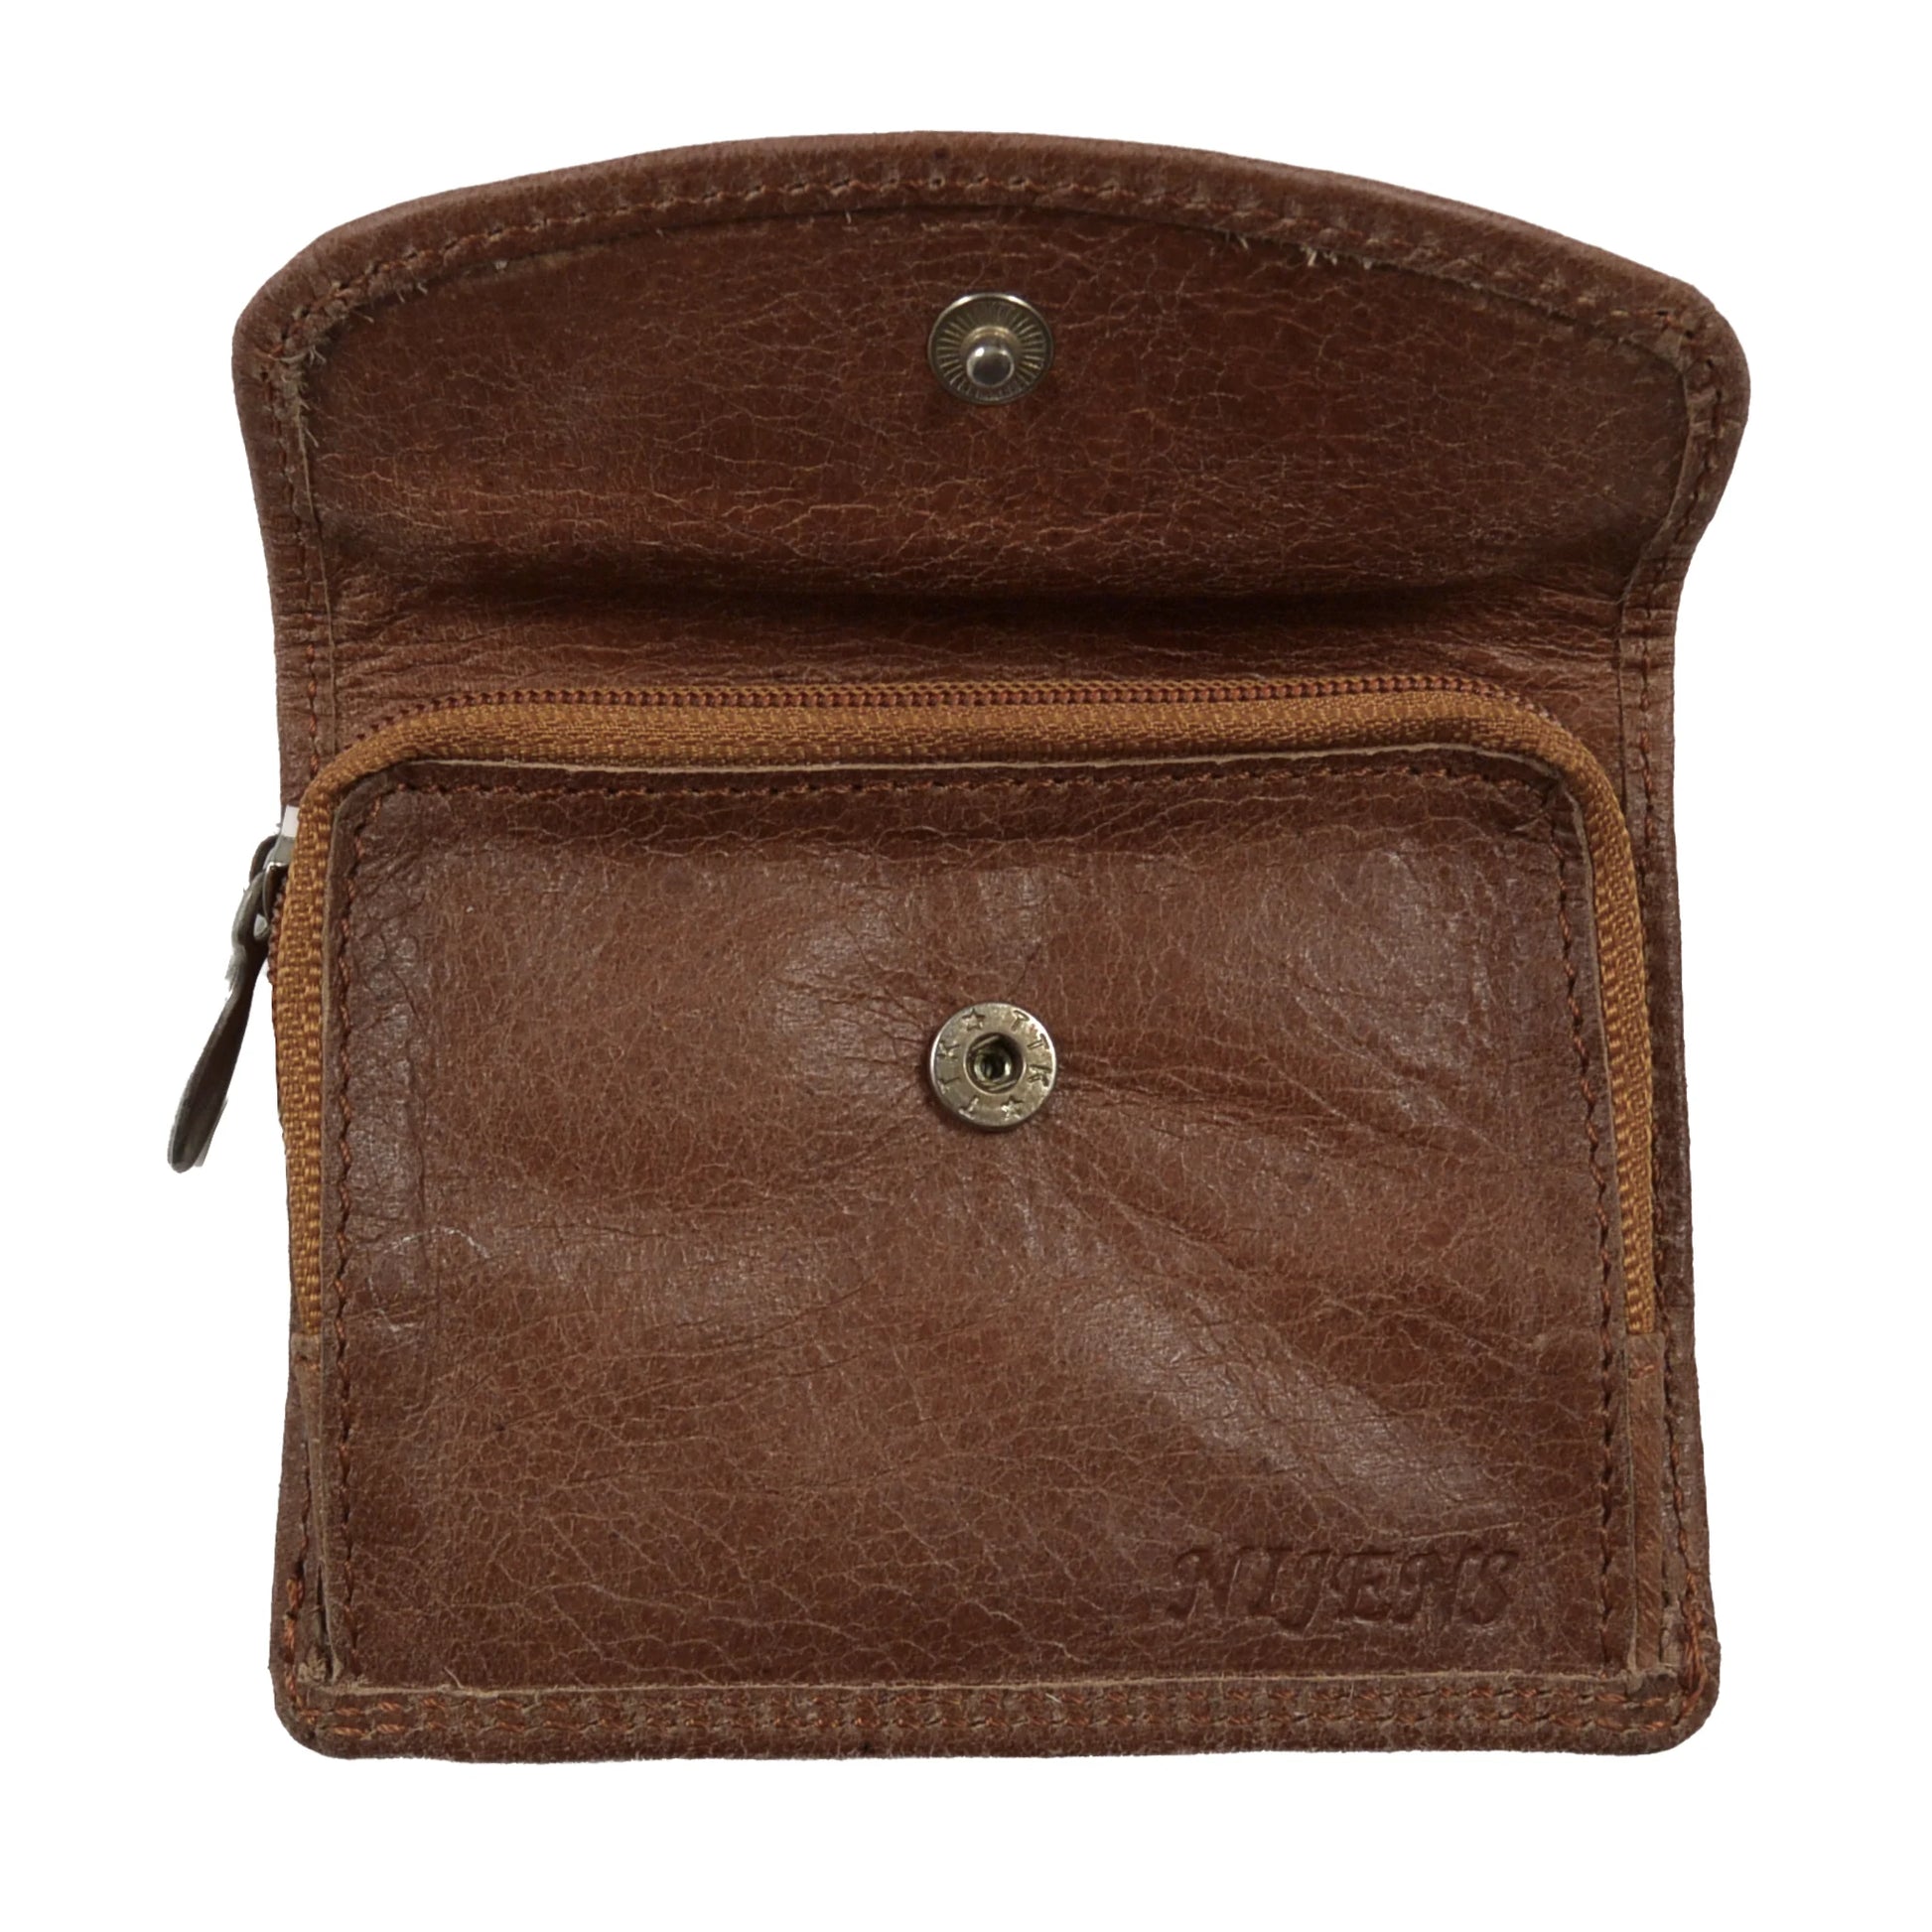 Kleines Portemonnaie, Geldbörse aus Leder, Braun, mit Reißverschlussfach, welches mit einem Druckknopf an einer Überlappung geschlossen ist.